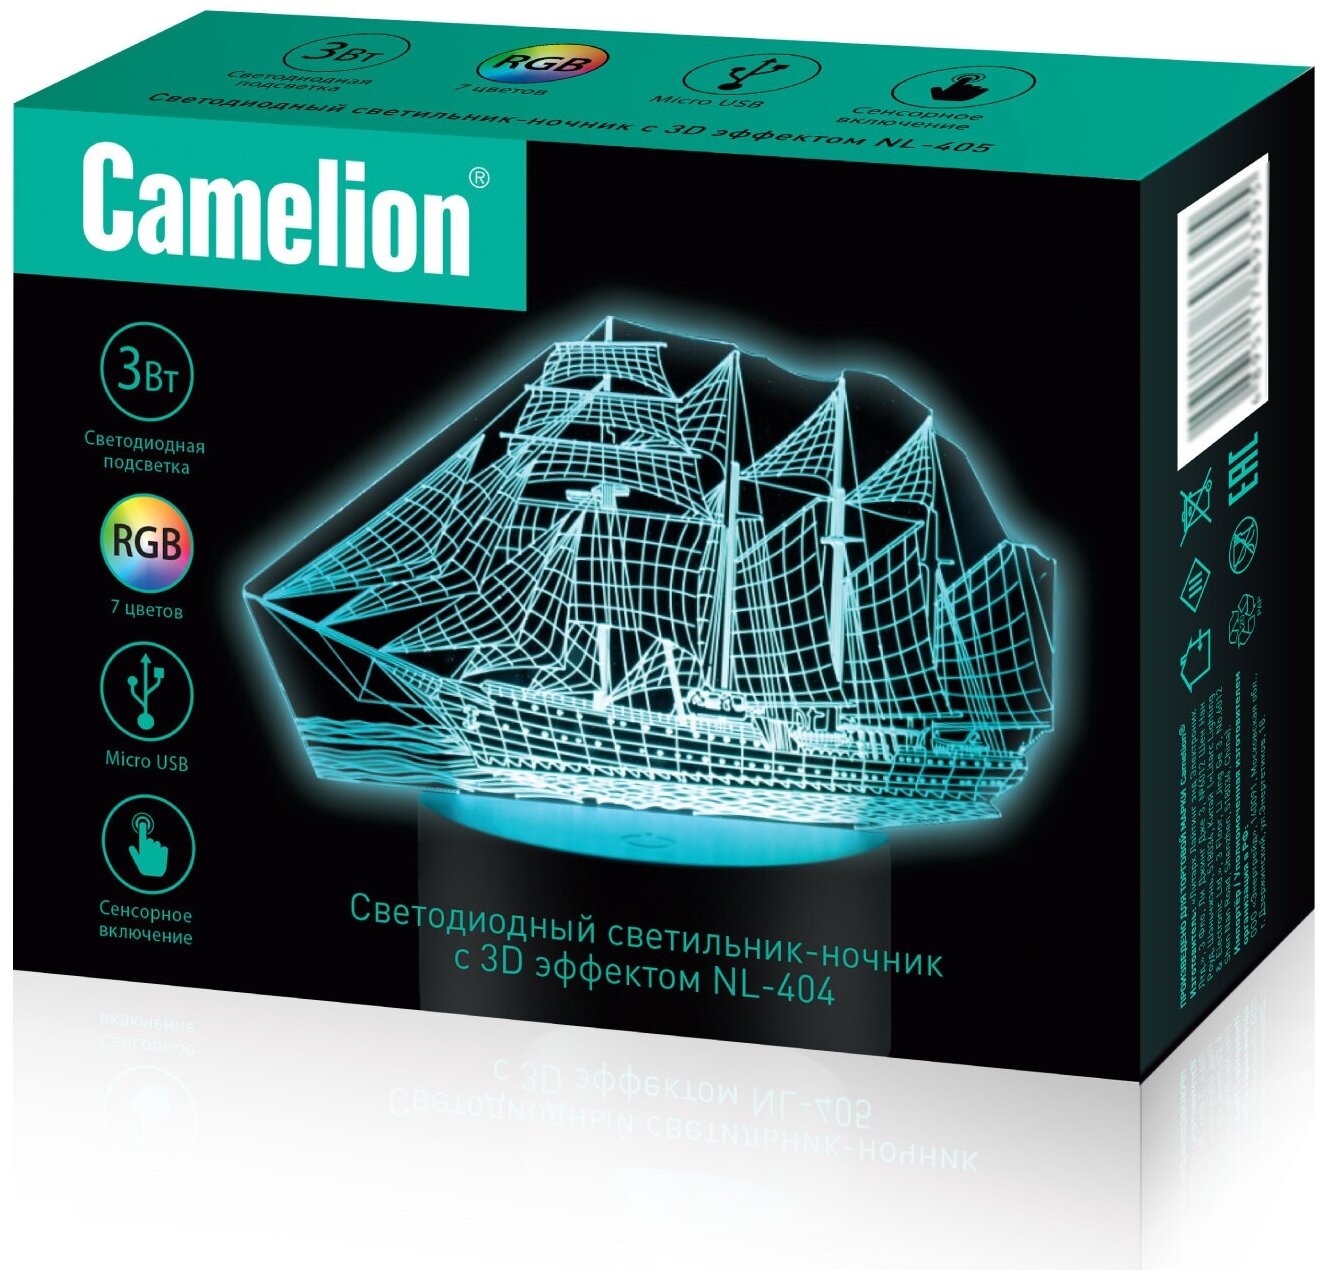 Ночник с 3D эффектом Camelion NL-404 Корабль